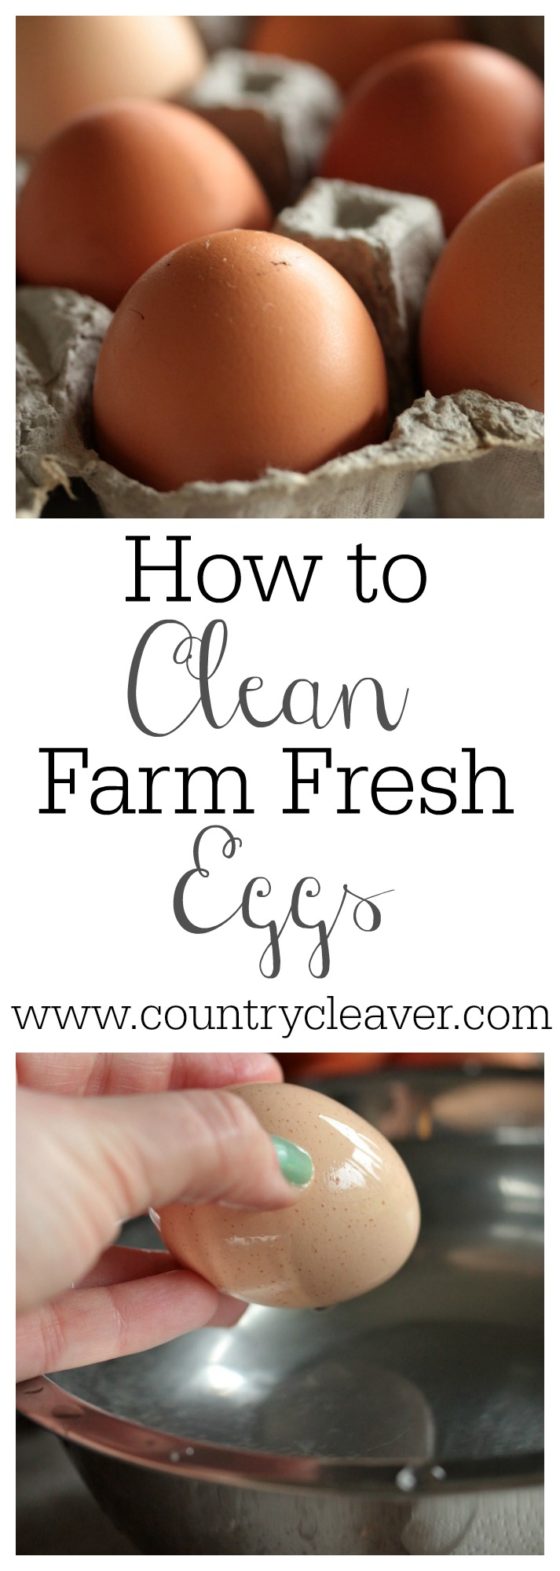 How to Clean Farm Fresh Eggs